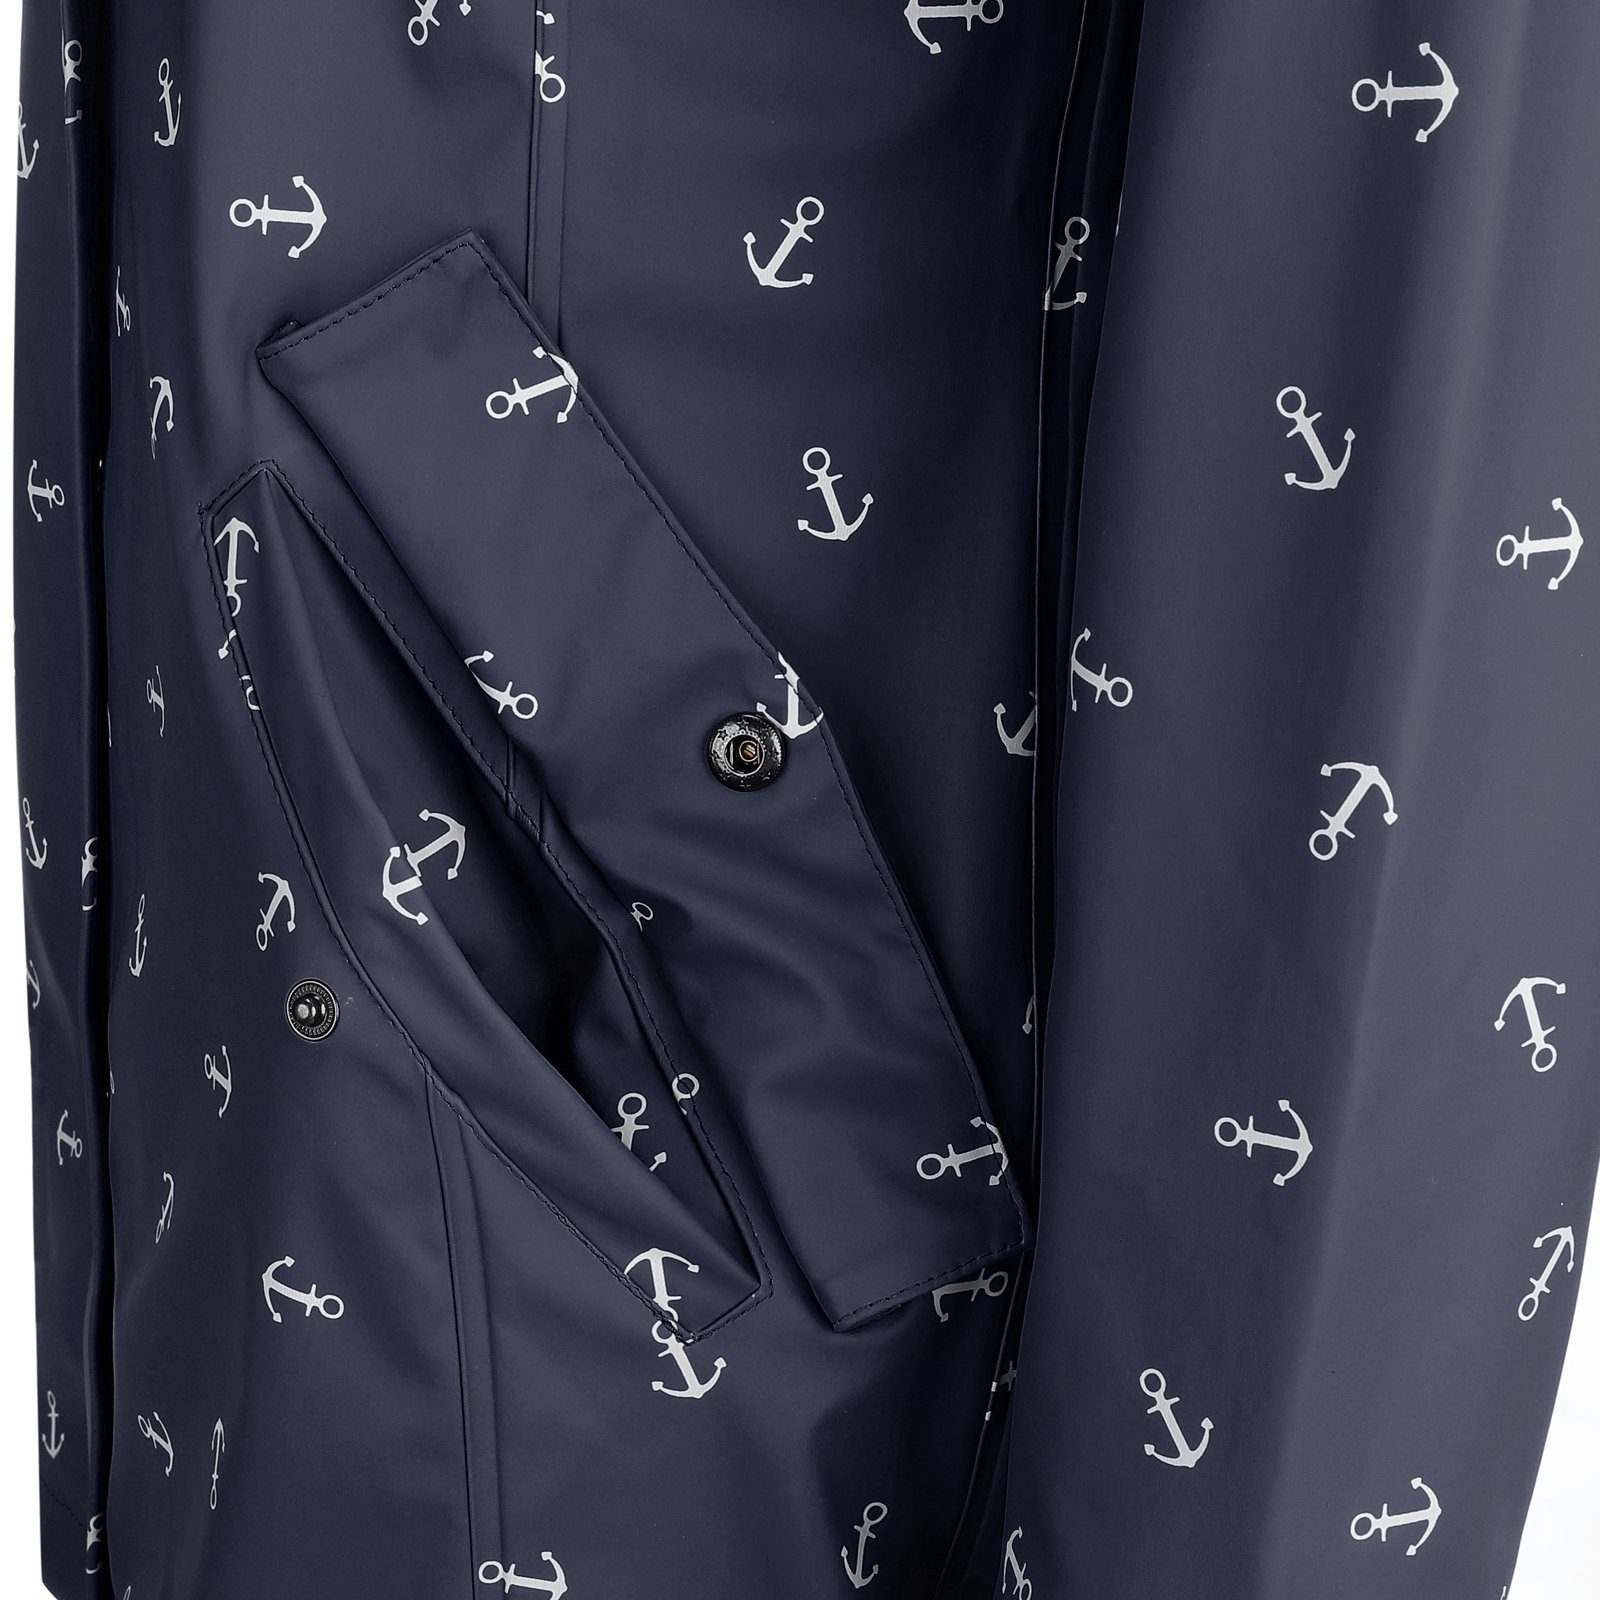 Dry Fashion Regenjacke Damen Kapuze wasserdicht Anker-Print Cuxhaven Regenmantel navy Jacke mit 